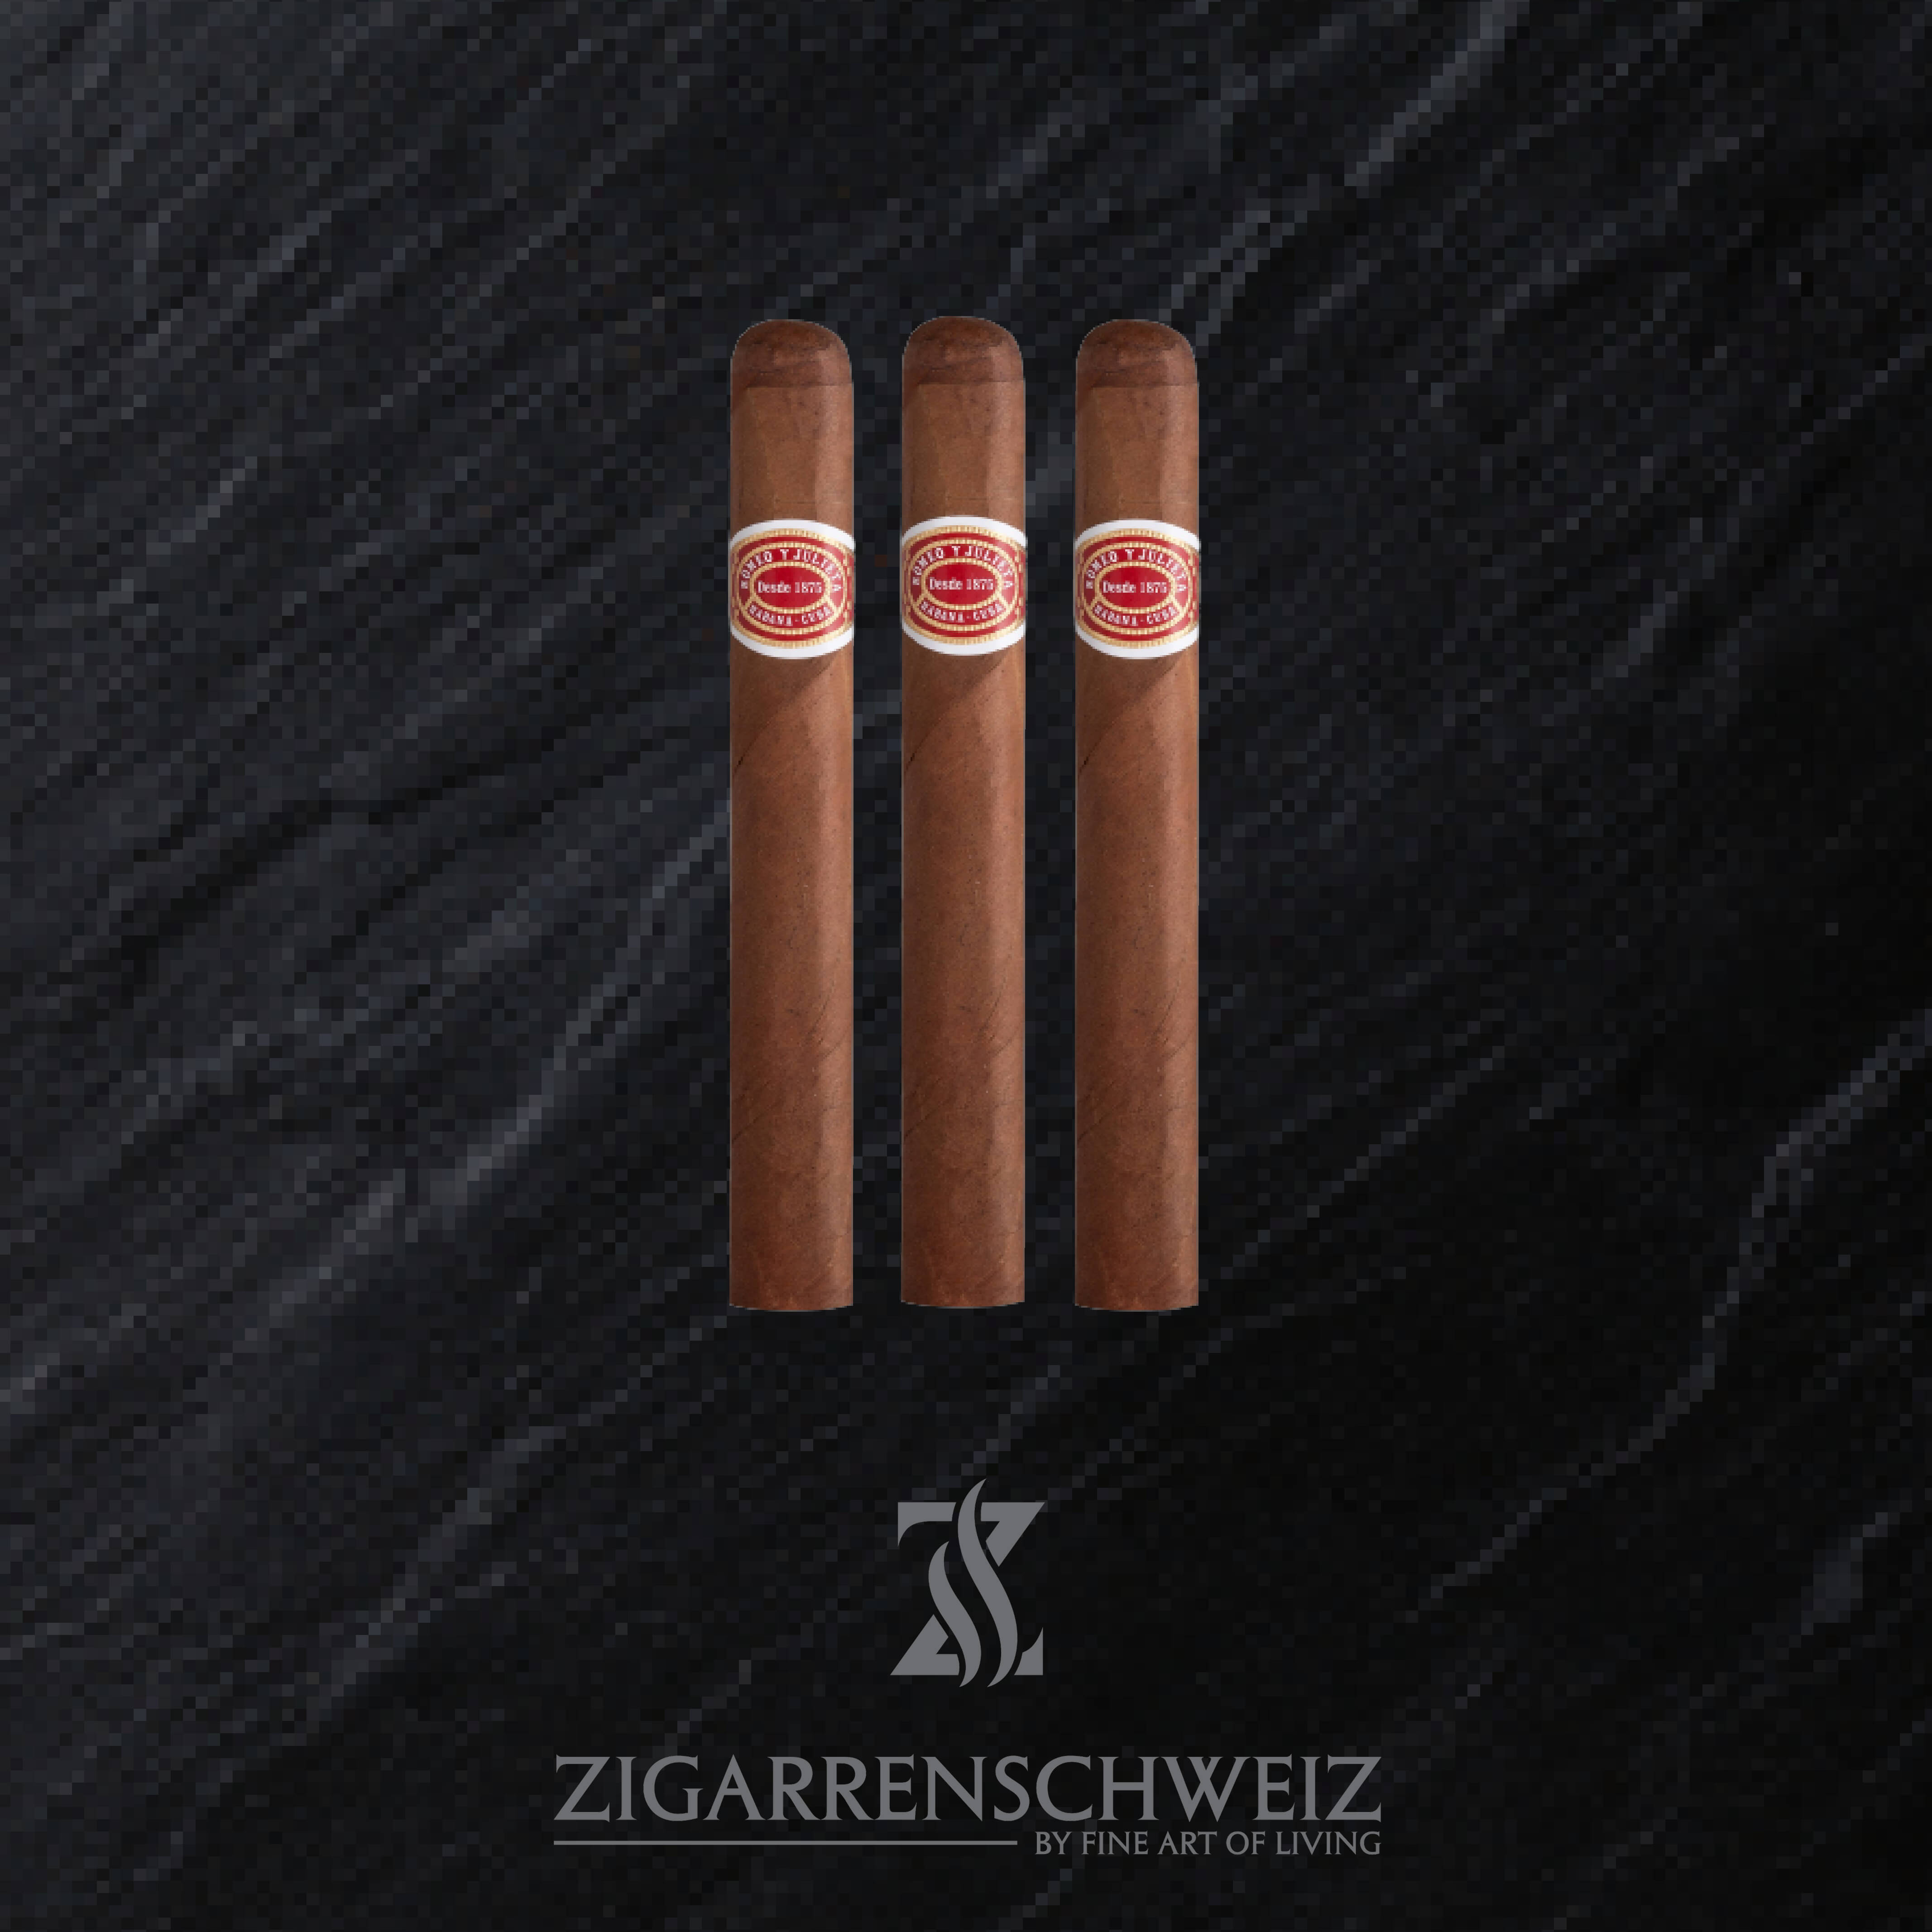 Romeo y Julieta Belvederes Zigarren aus Kuba - 3er Zigarren Etui von Zigarren Schweiz